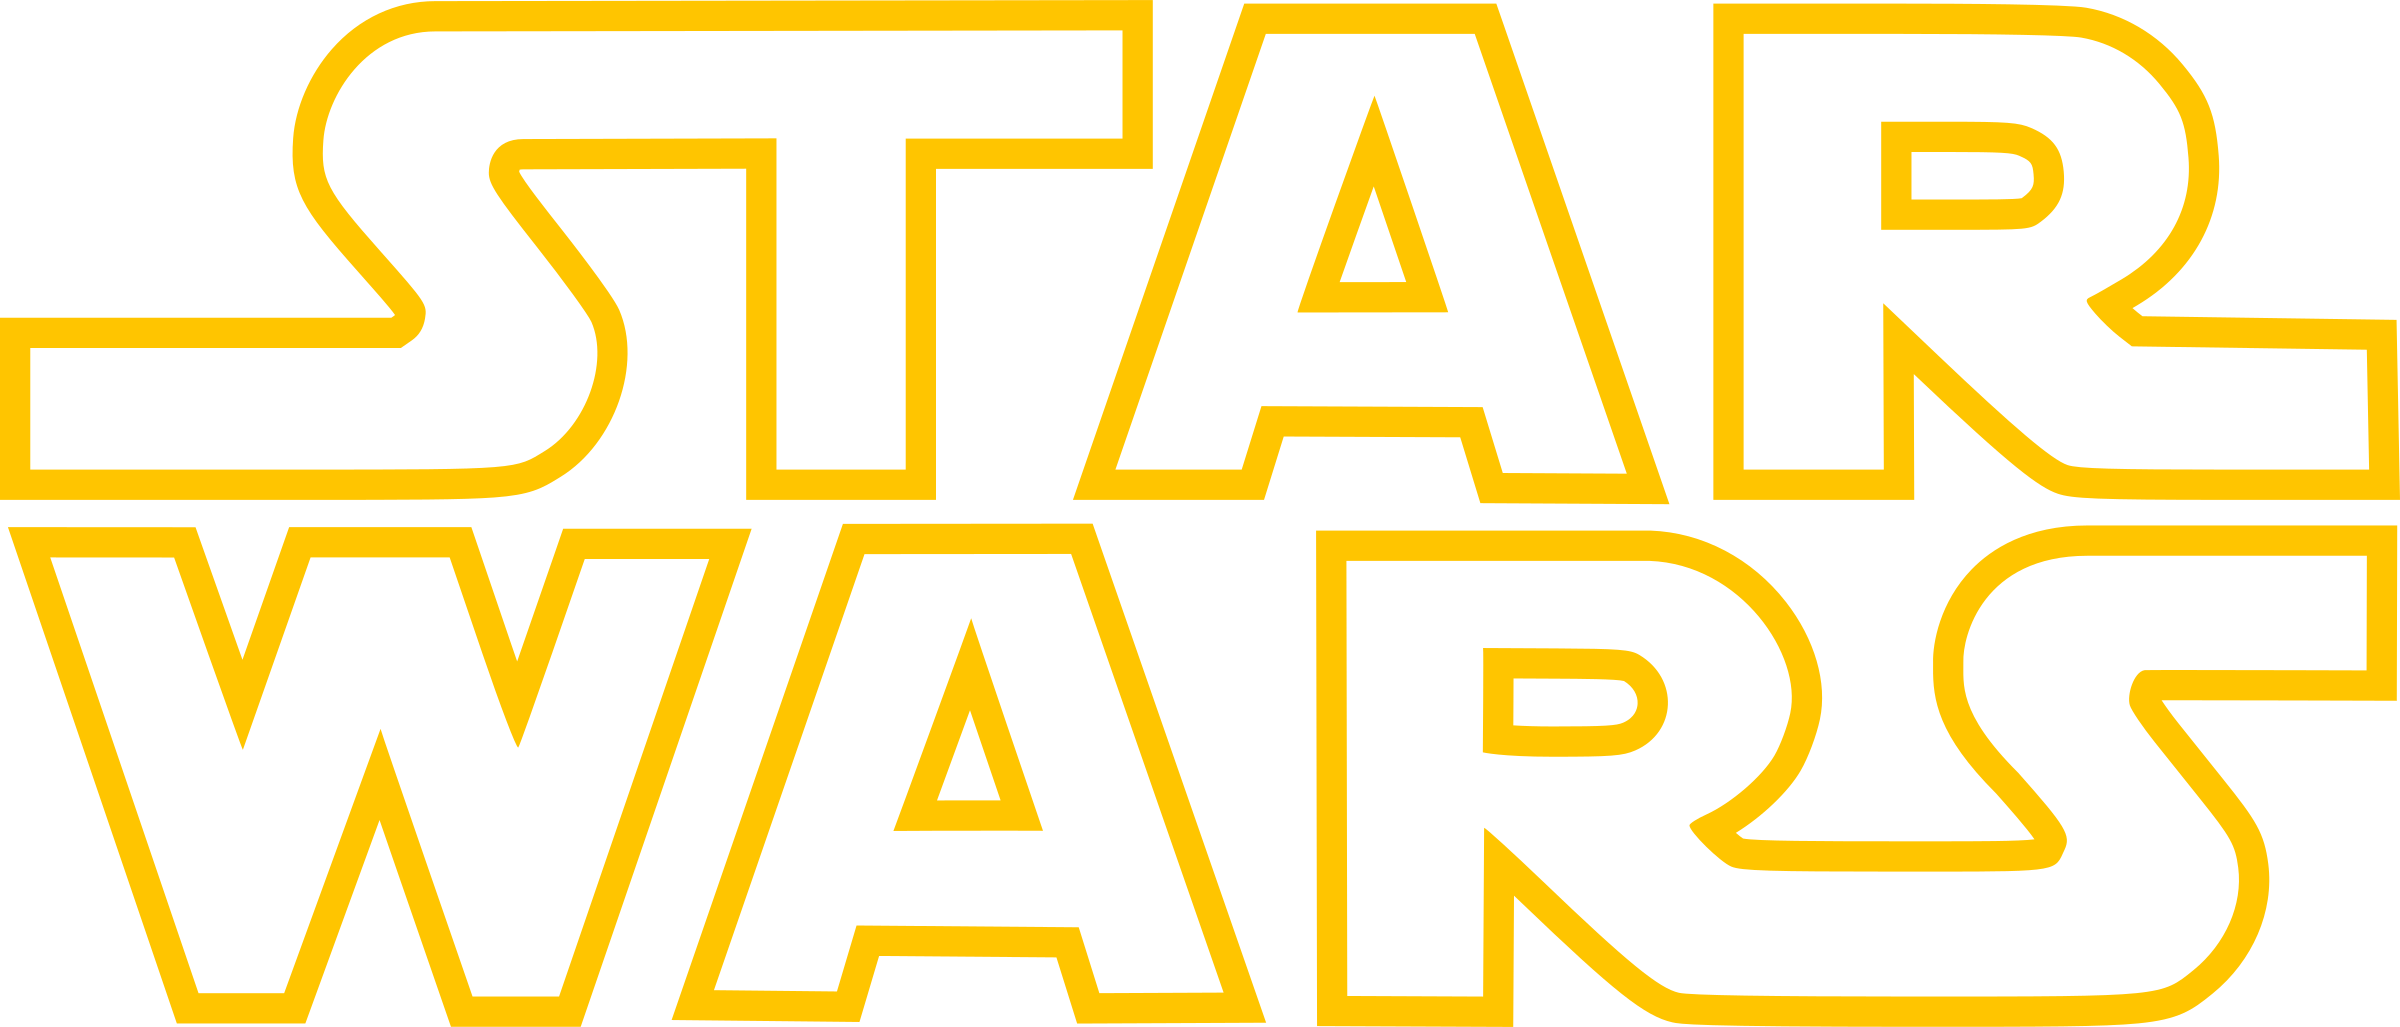 Star Wars Logo PNG Hochwertiges Bild